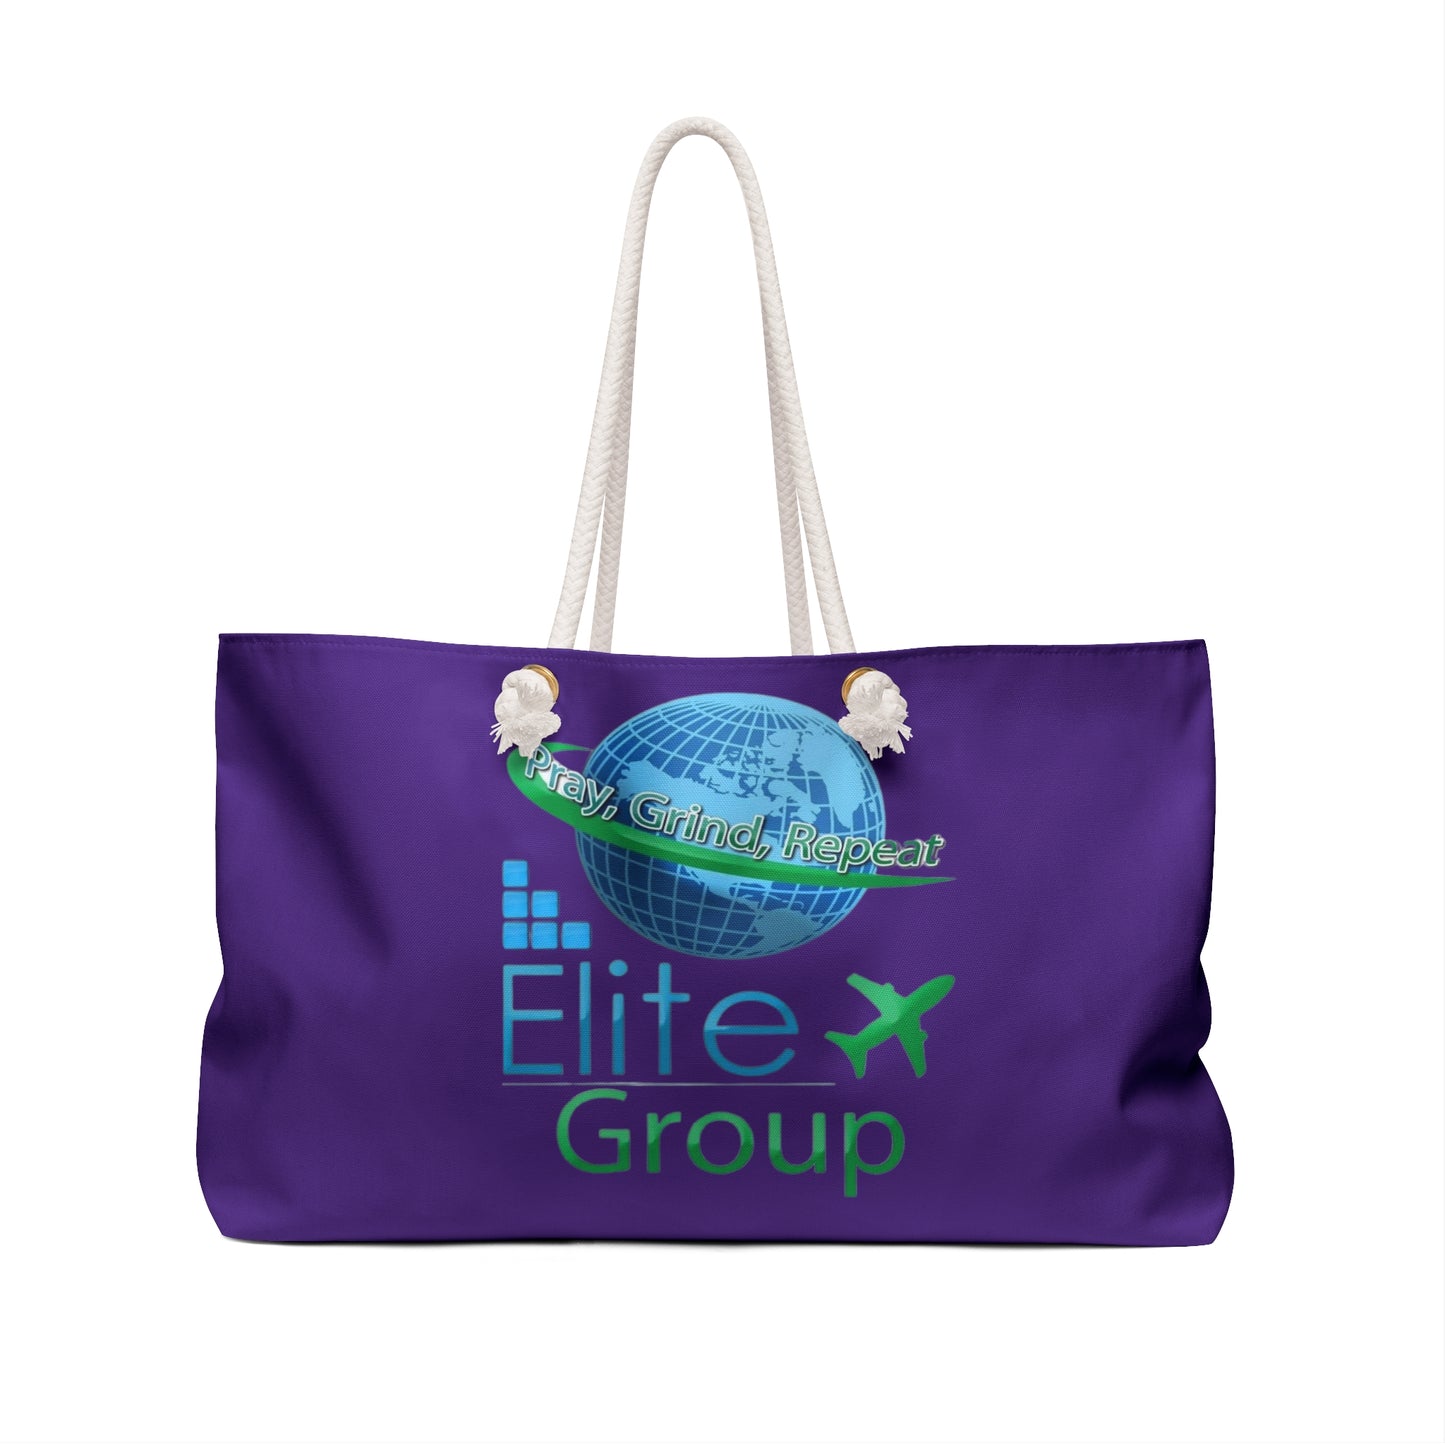 Elite Travel Group Weekender Bag